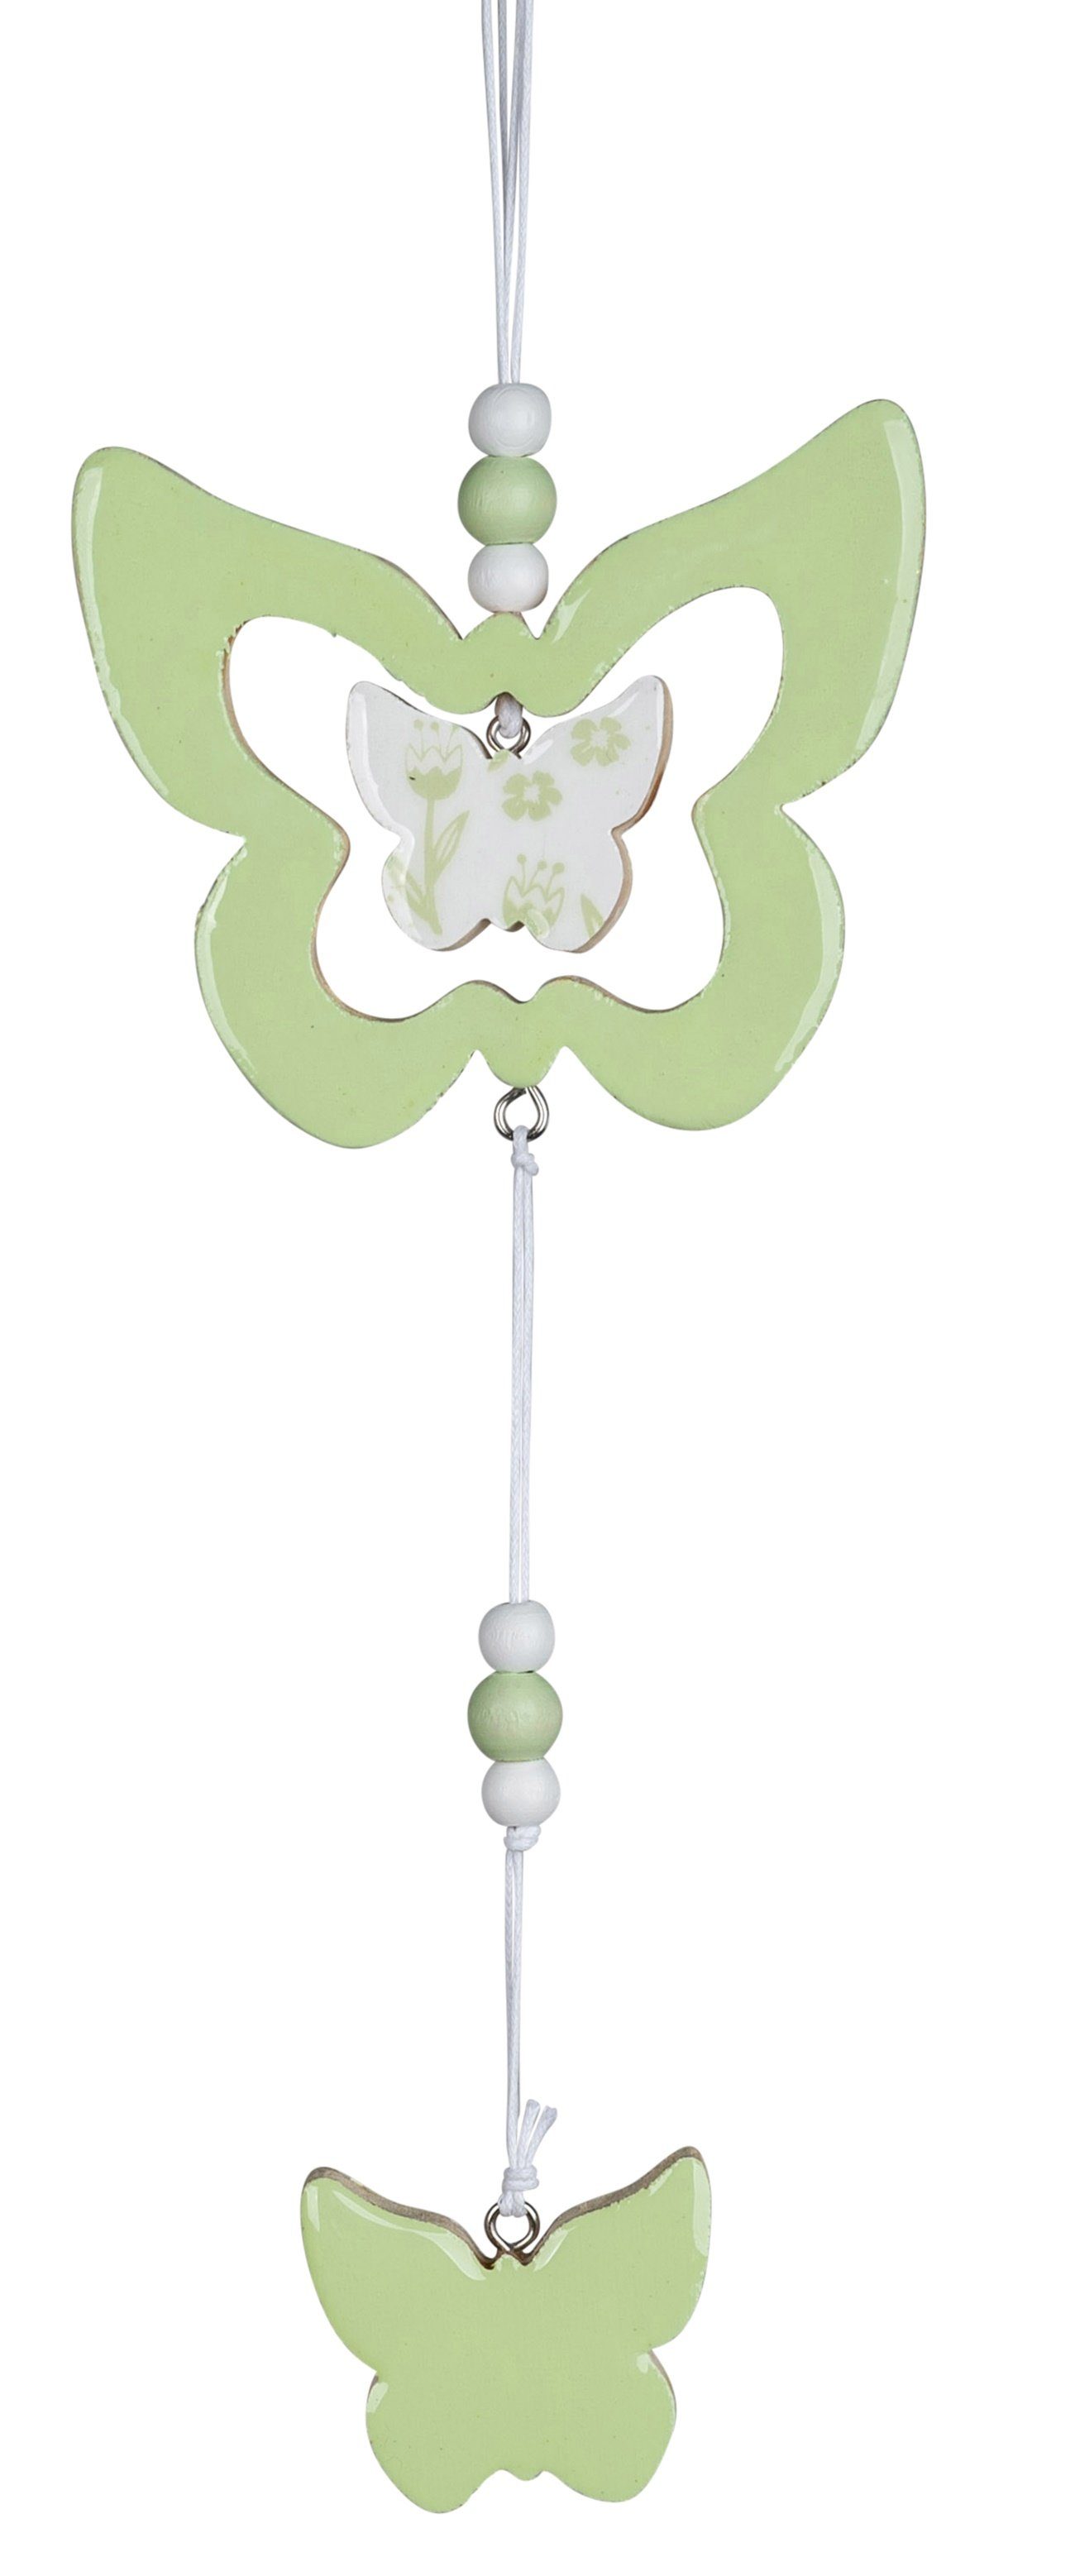 Fenster-Girlande-Schmetterling 10x33cm grün dekojohnson mint Hängedekoration